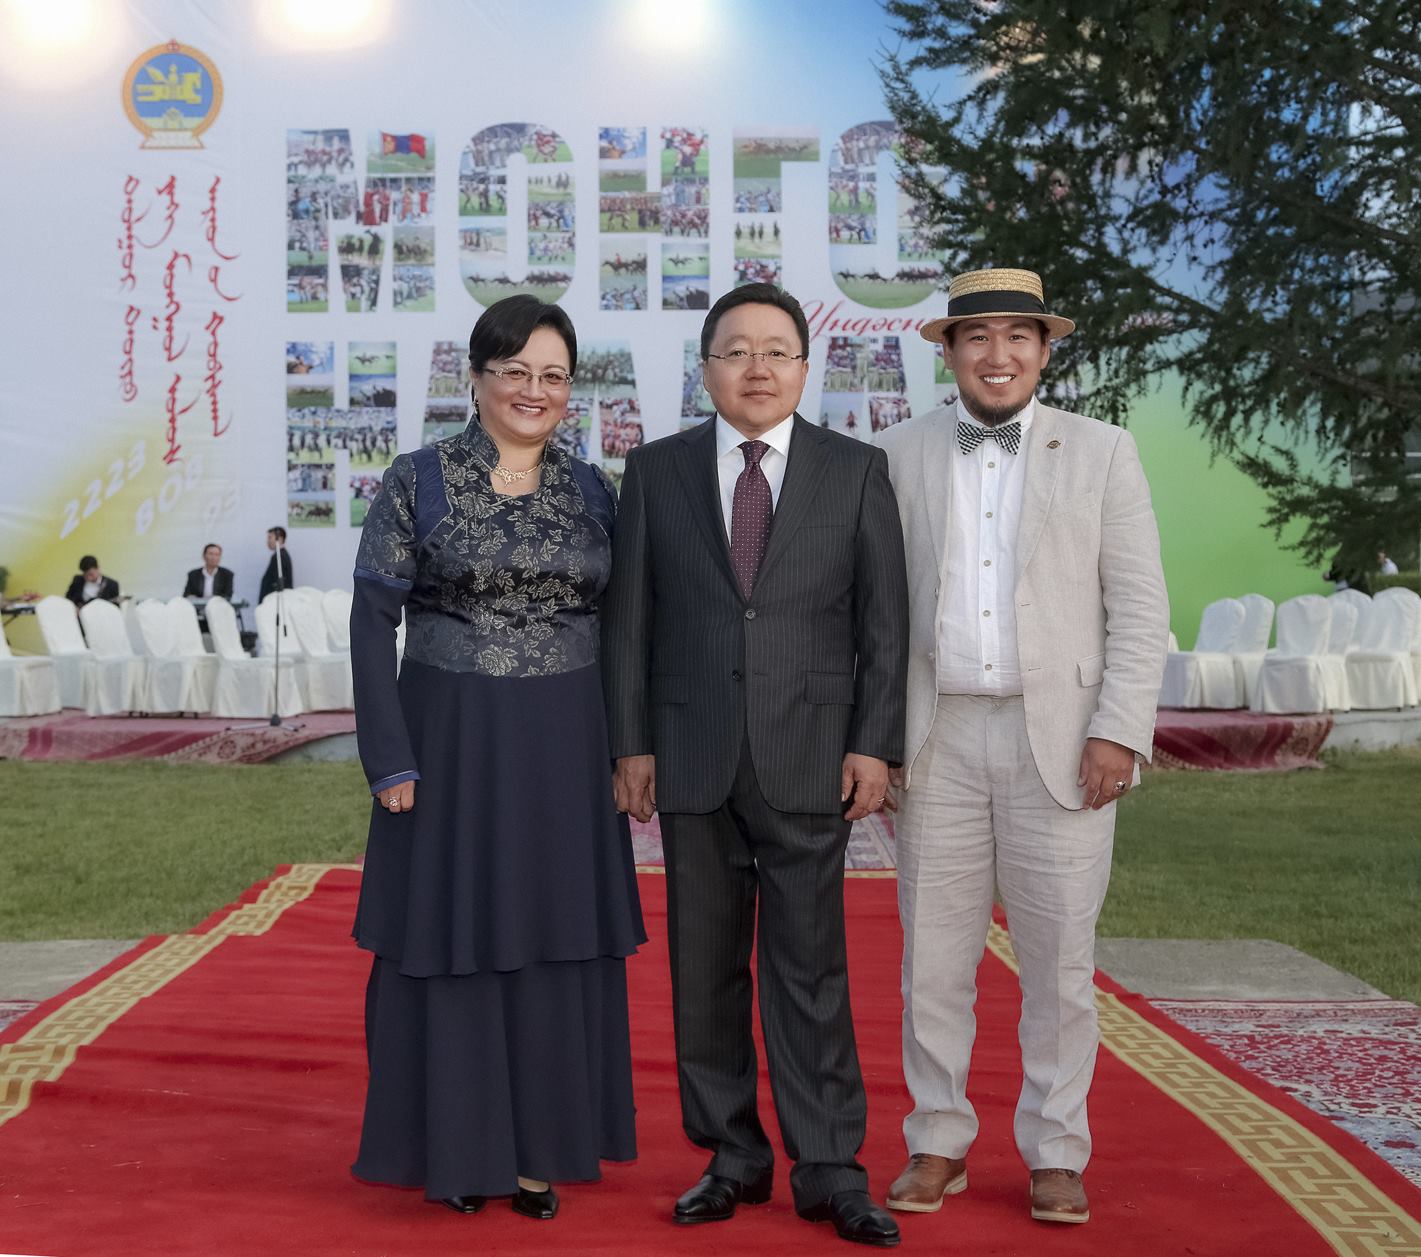 President of Mongolia Eldegdorj Tsakhia 2014